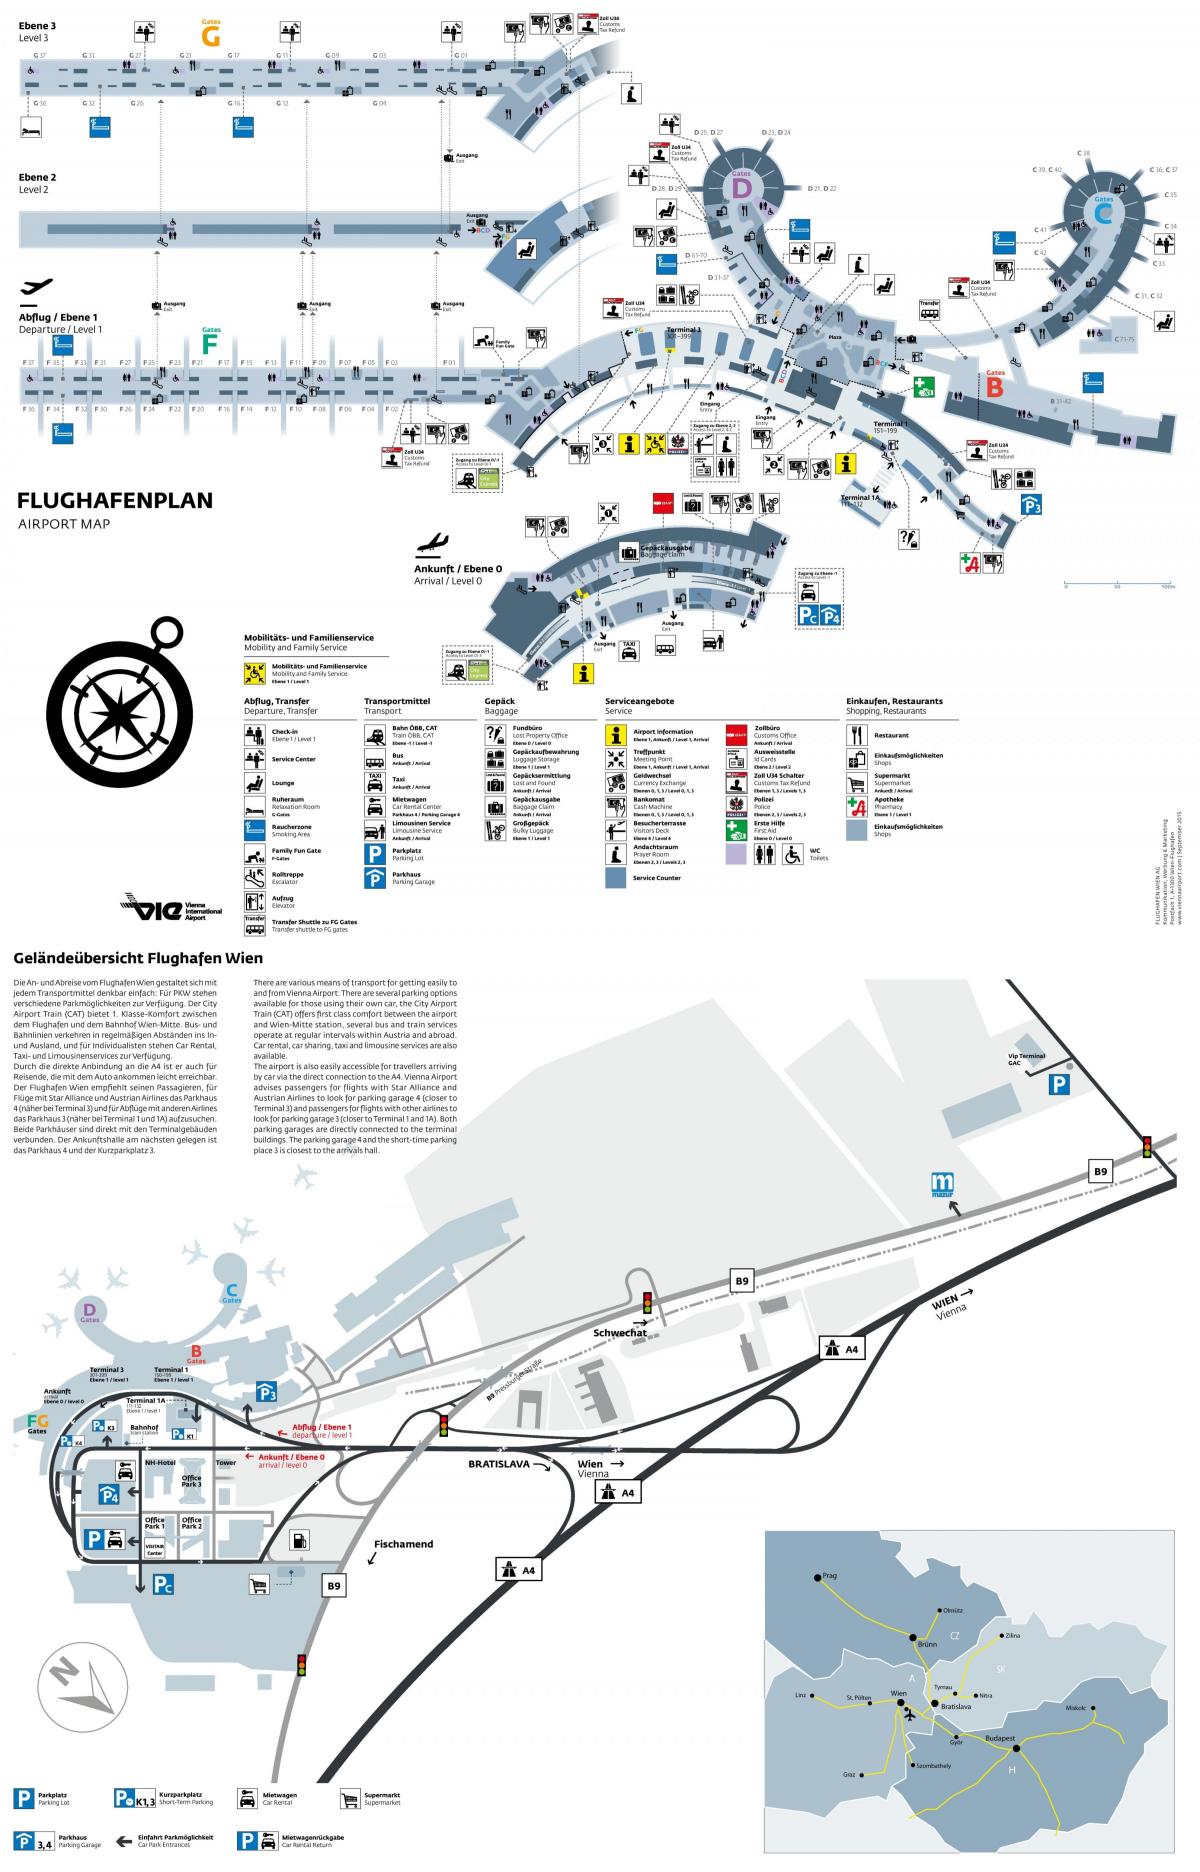 El aeropuerto de viena, las salidas mapa